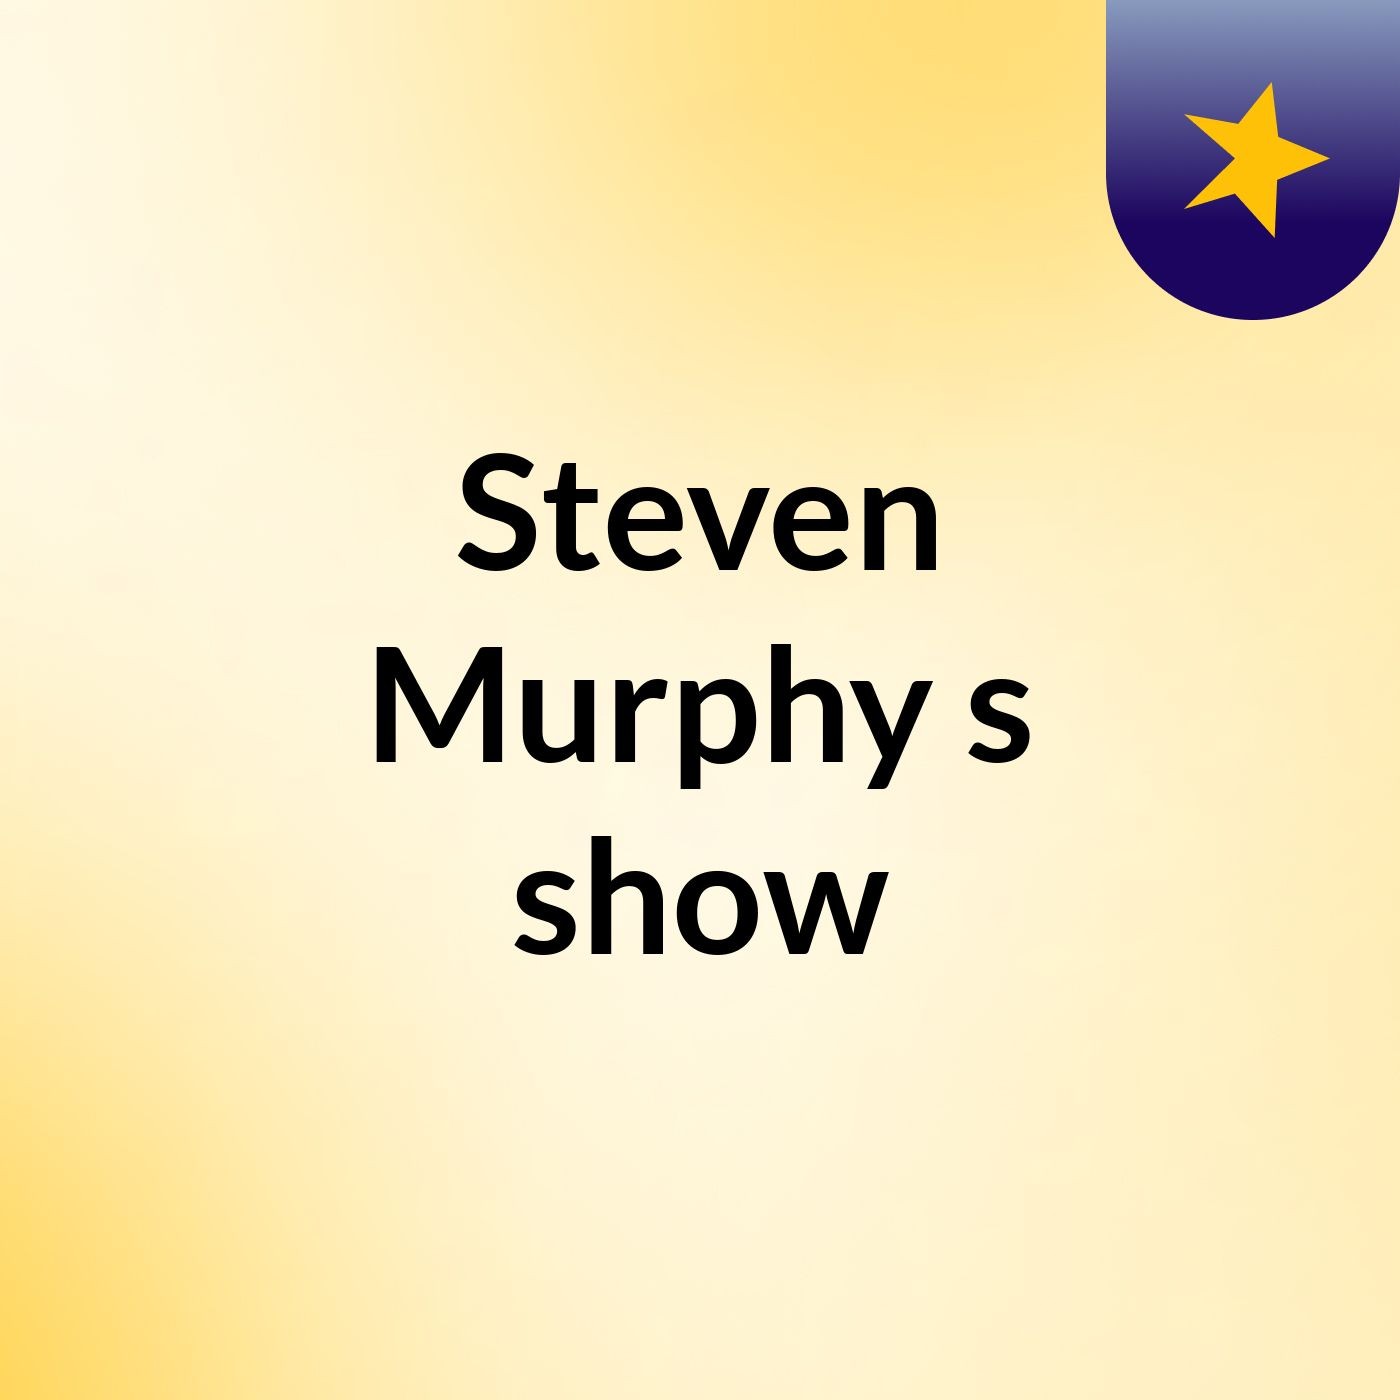 Steven Murphy's show